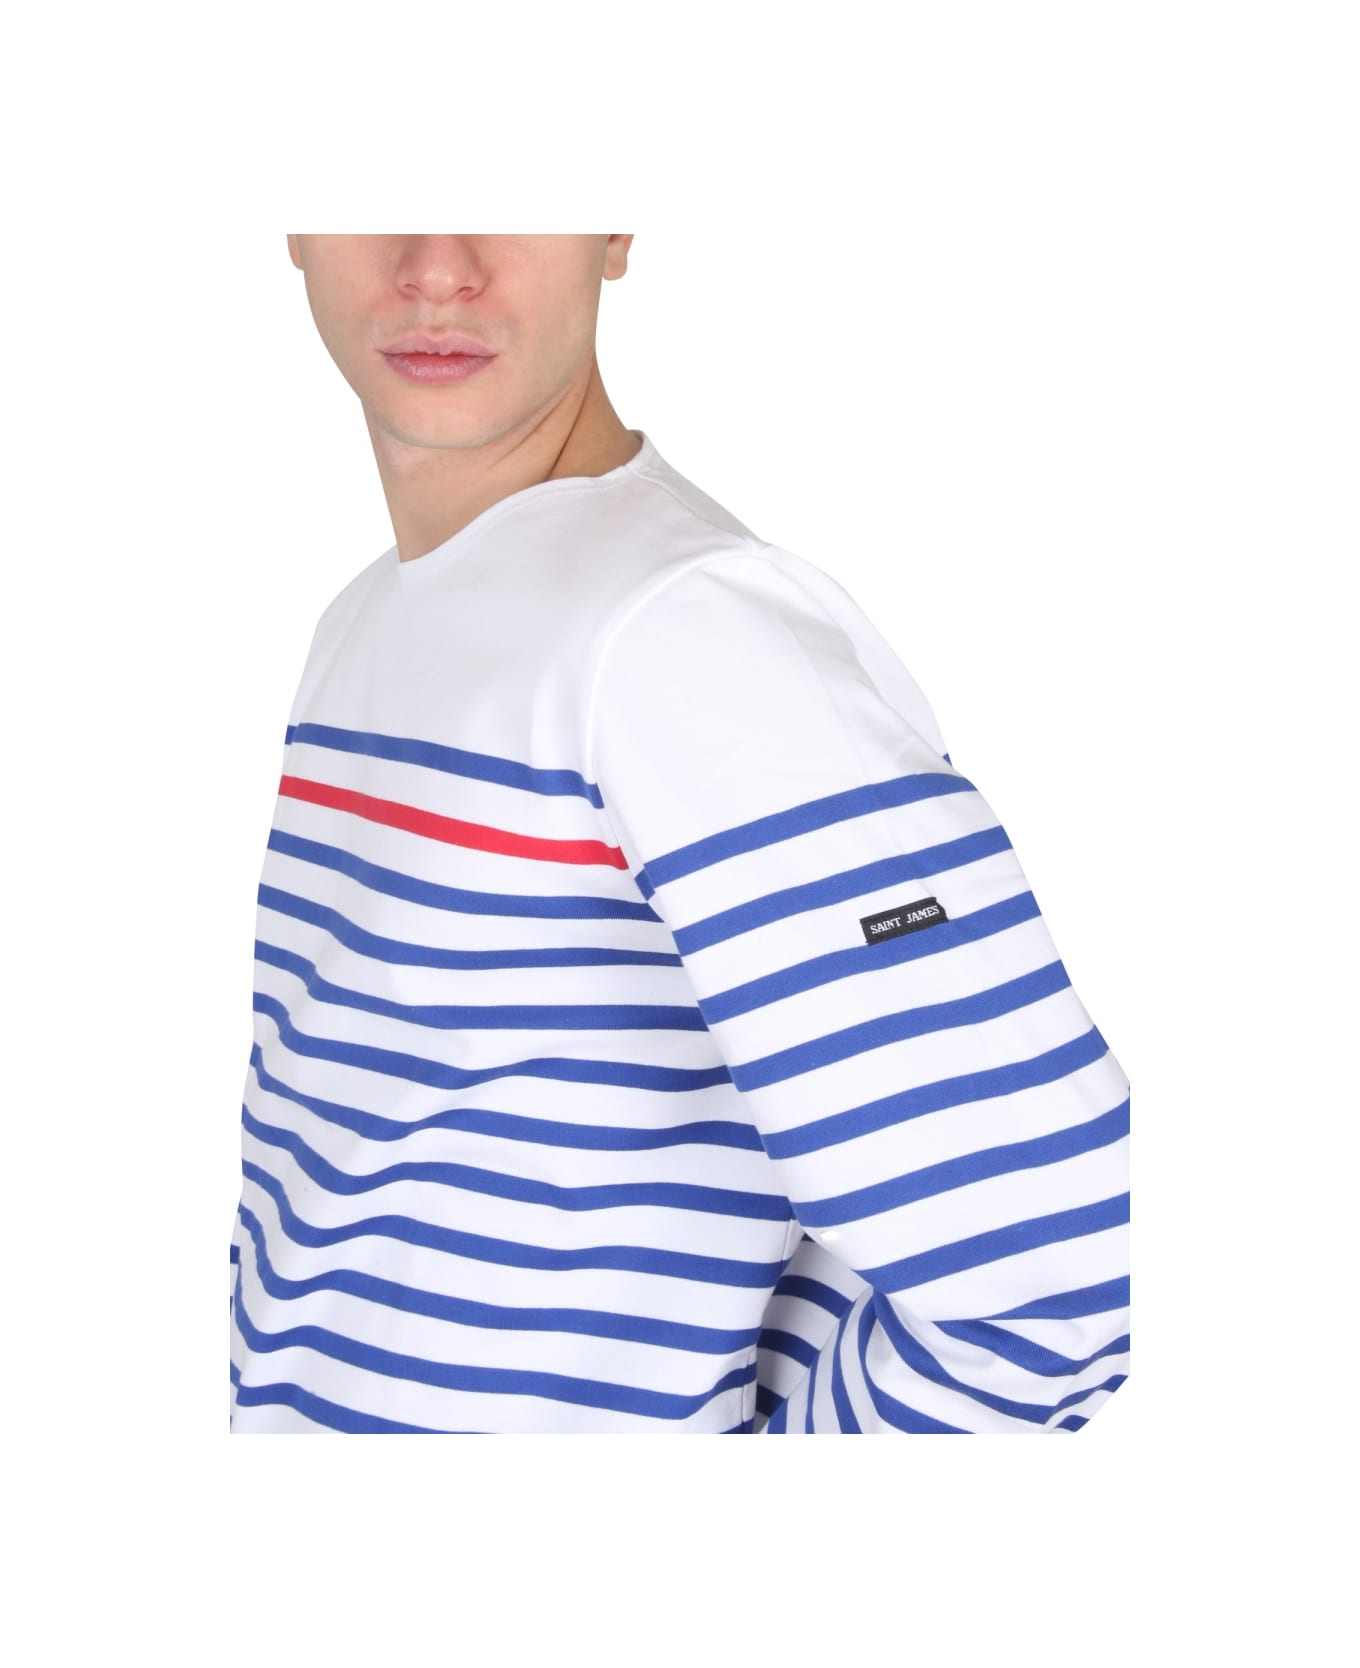 Saint James T-shirt Naval Ray Rouge - MULTICOLOUR